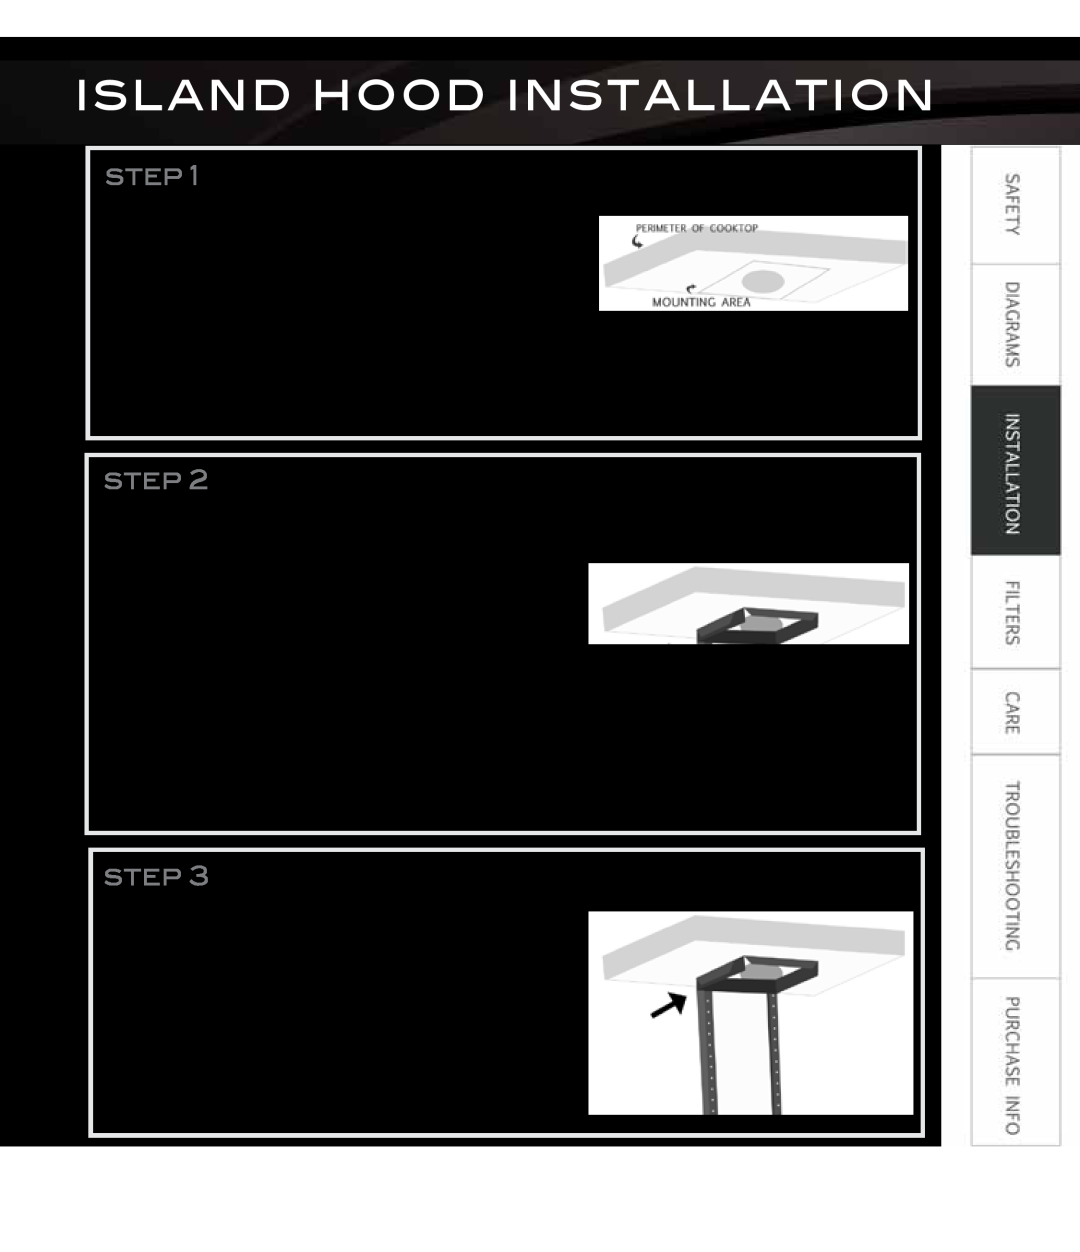 Proline PLZWKL2, PLZWKF, PLZW697 Island Hood Installation, Mark ceiling, Install support brackets, Install ceiling bracket 